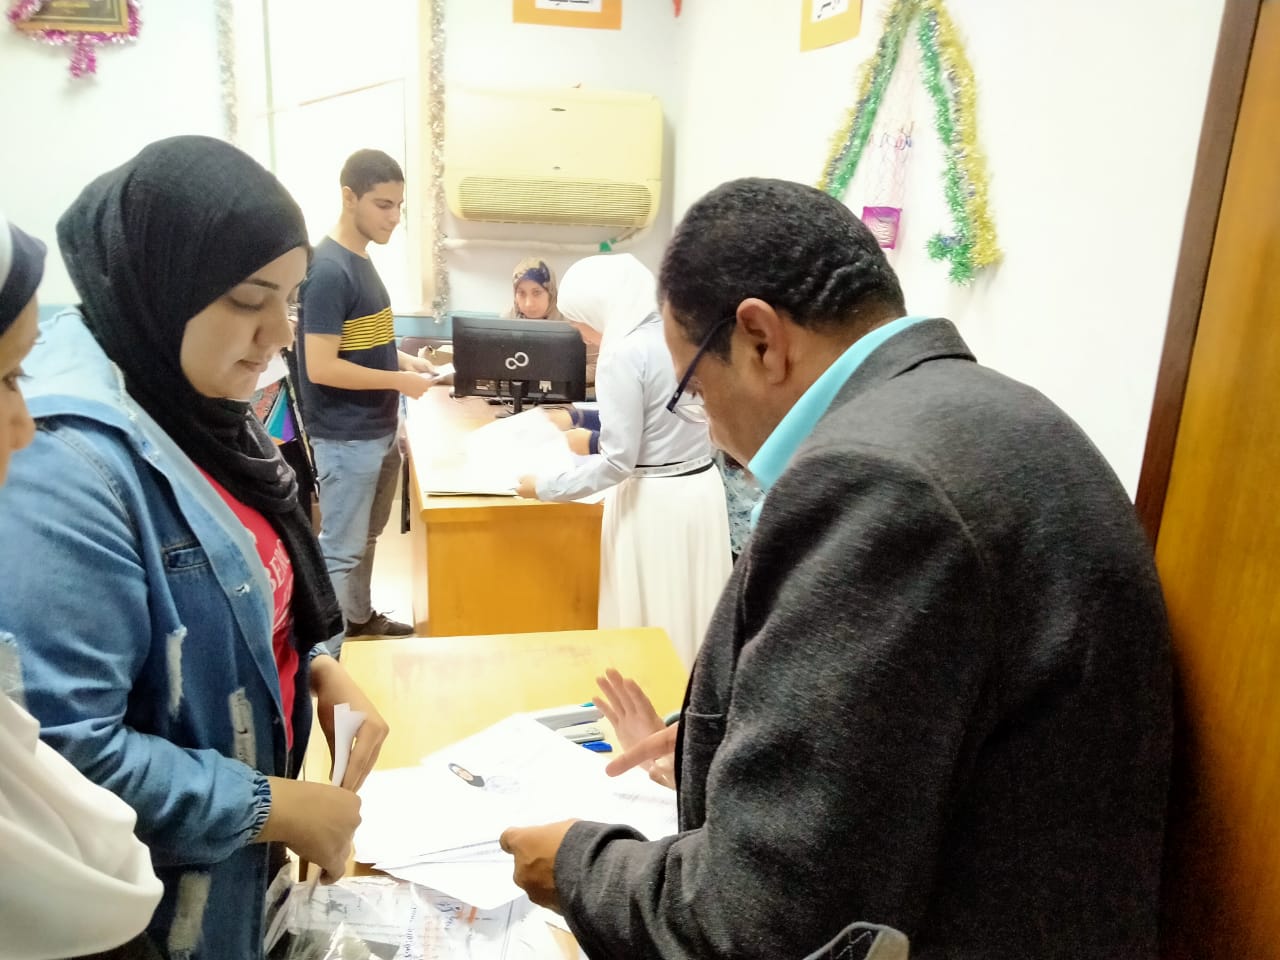 زحام بدار العلوم القاهرة لسحب استمارات الترشح لانتخابات اتحاد الطلاب (3)